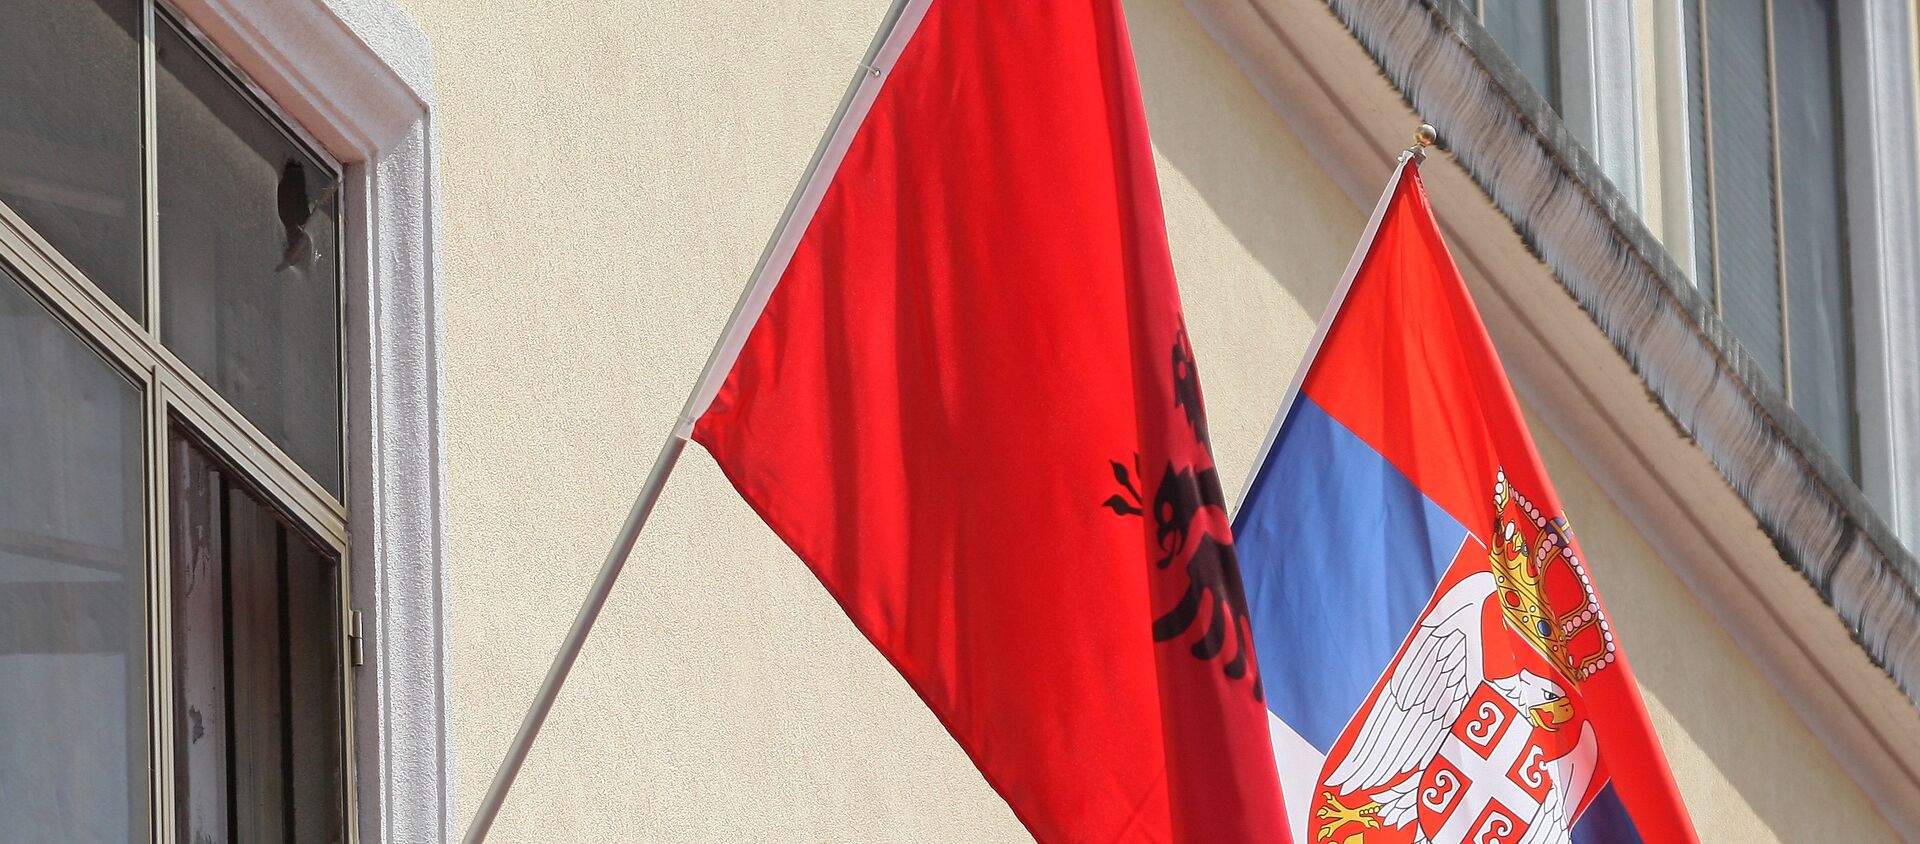 Zastave Albanije i Srbije - Sputnik Srbija, 1920, 08.05.2021